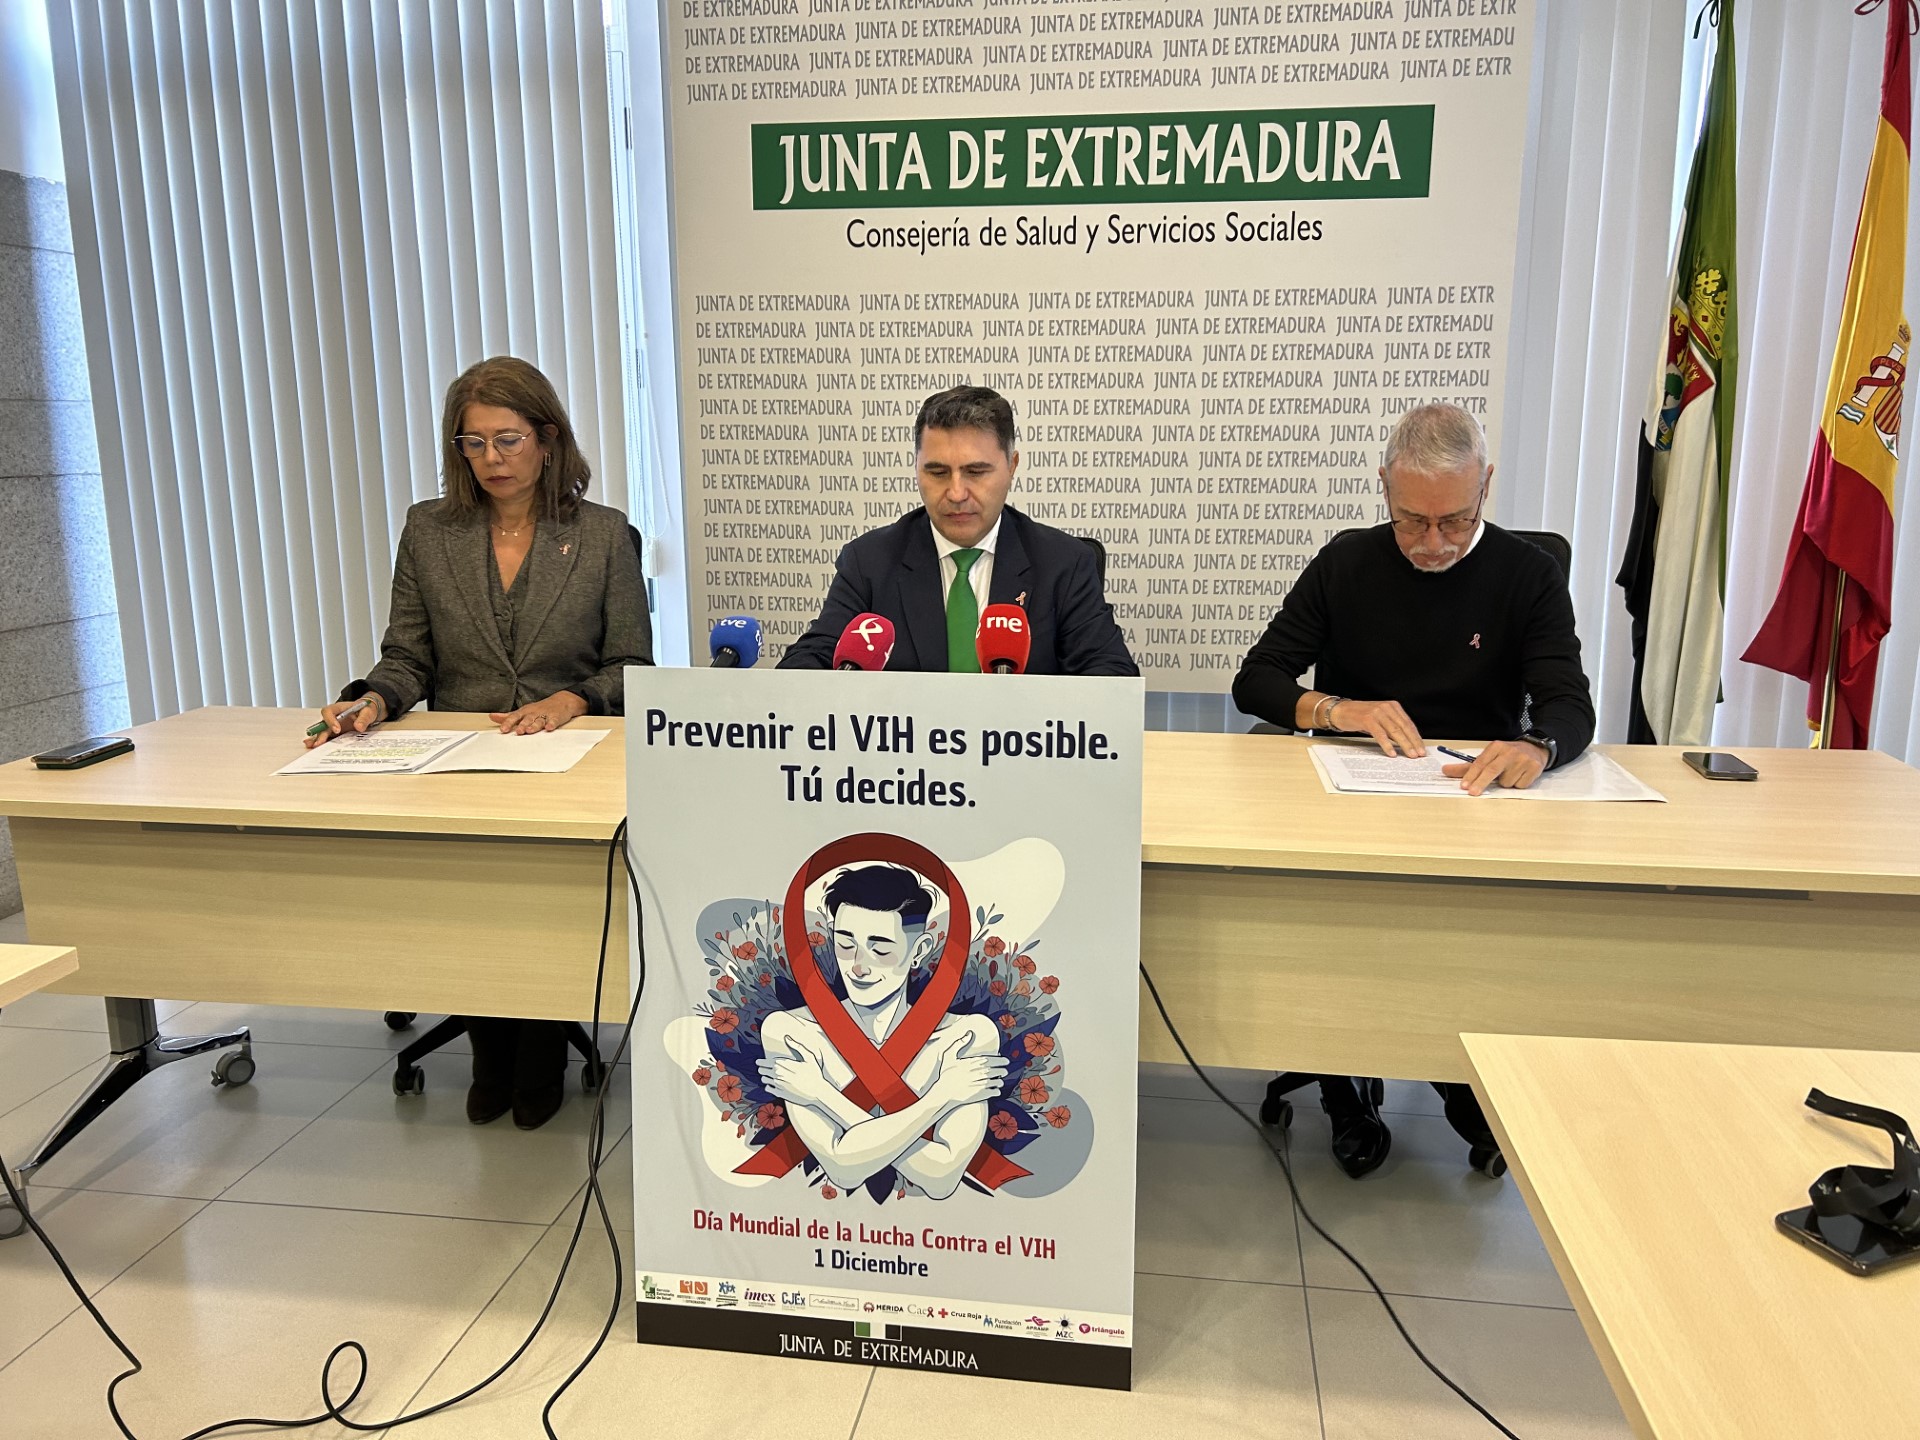 Image 0 of article La Junta de Extremadura se suma a las actividades programadas con motivo de la celebración del Día Mundial de la Lucha contra el SIDA